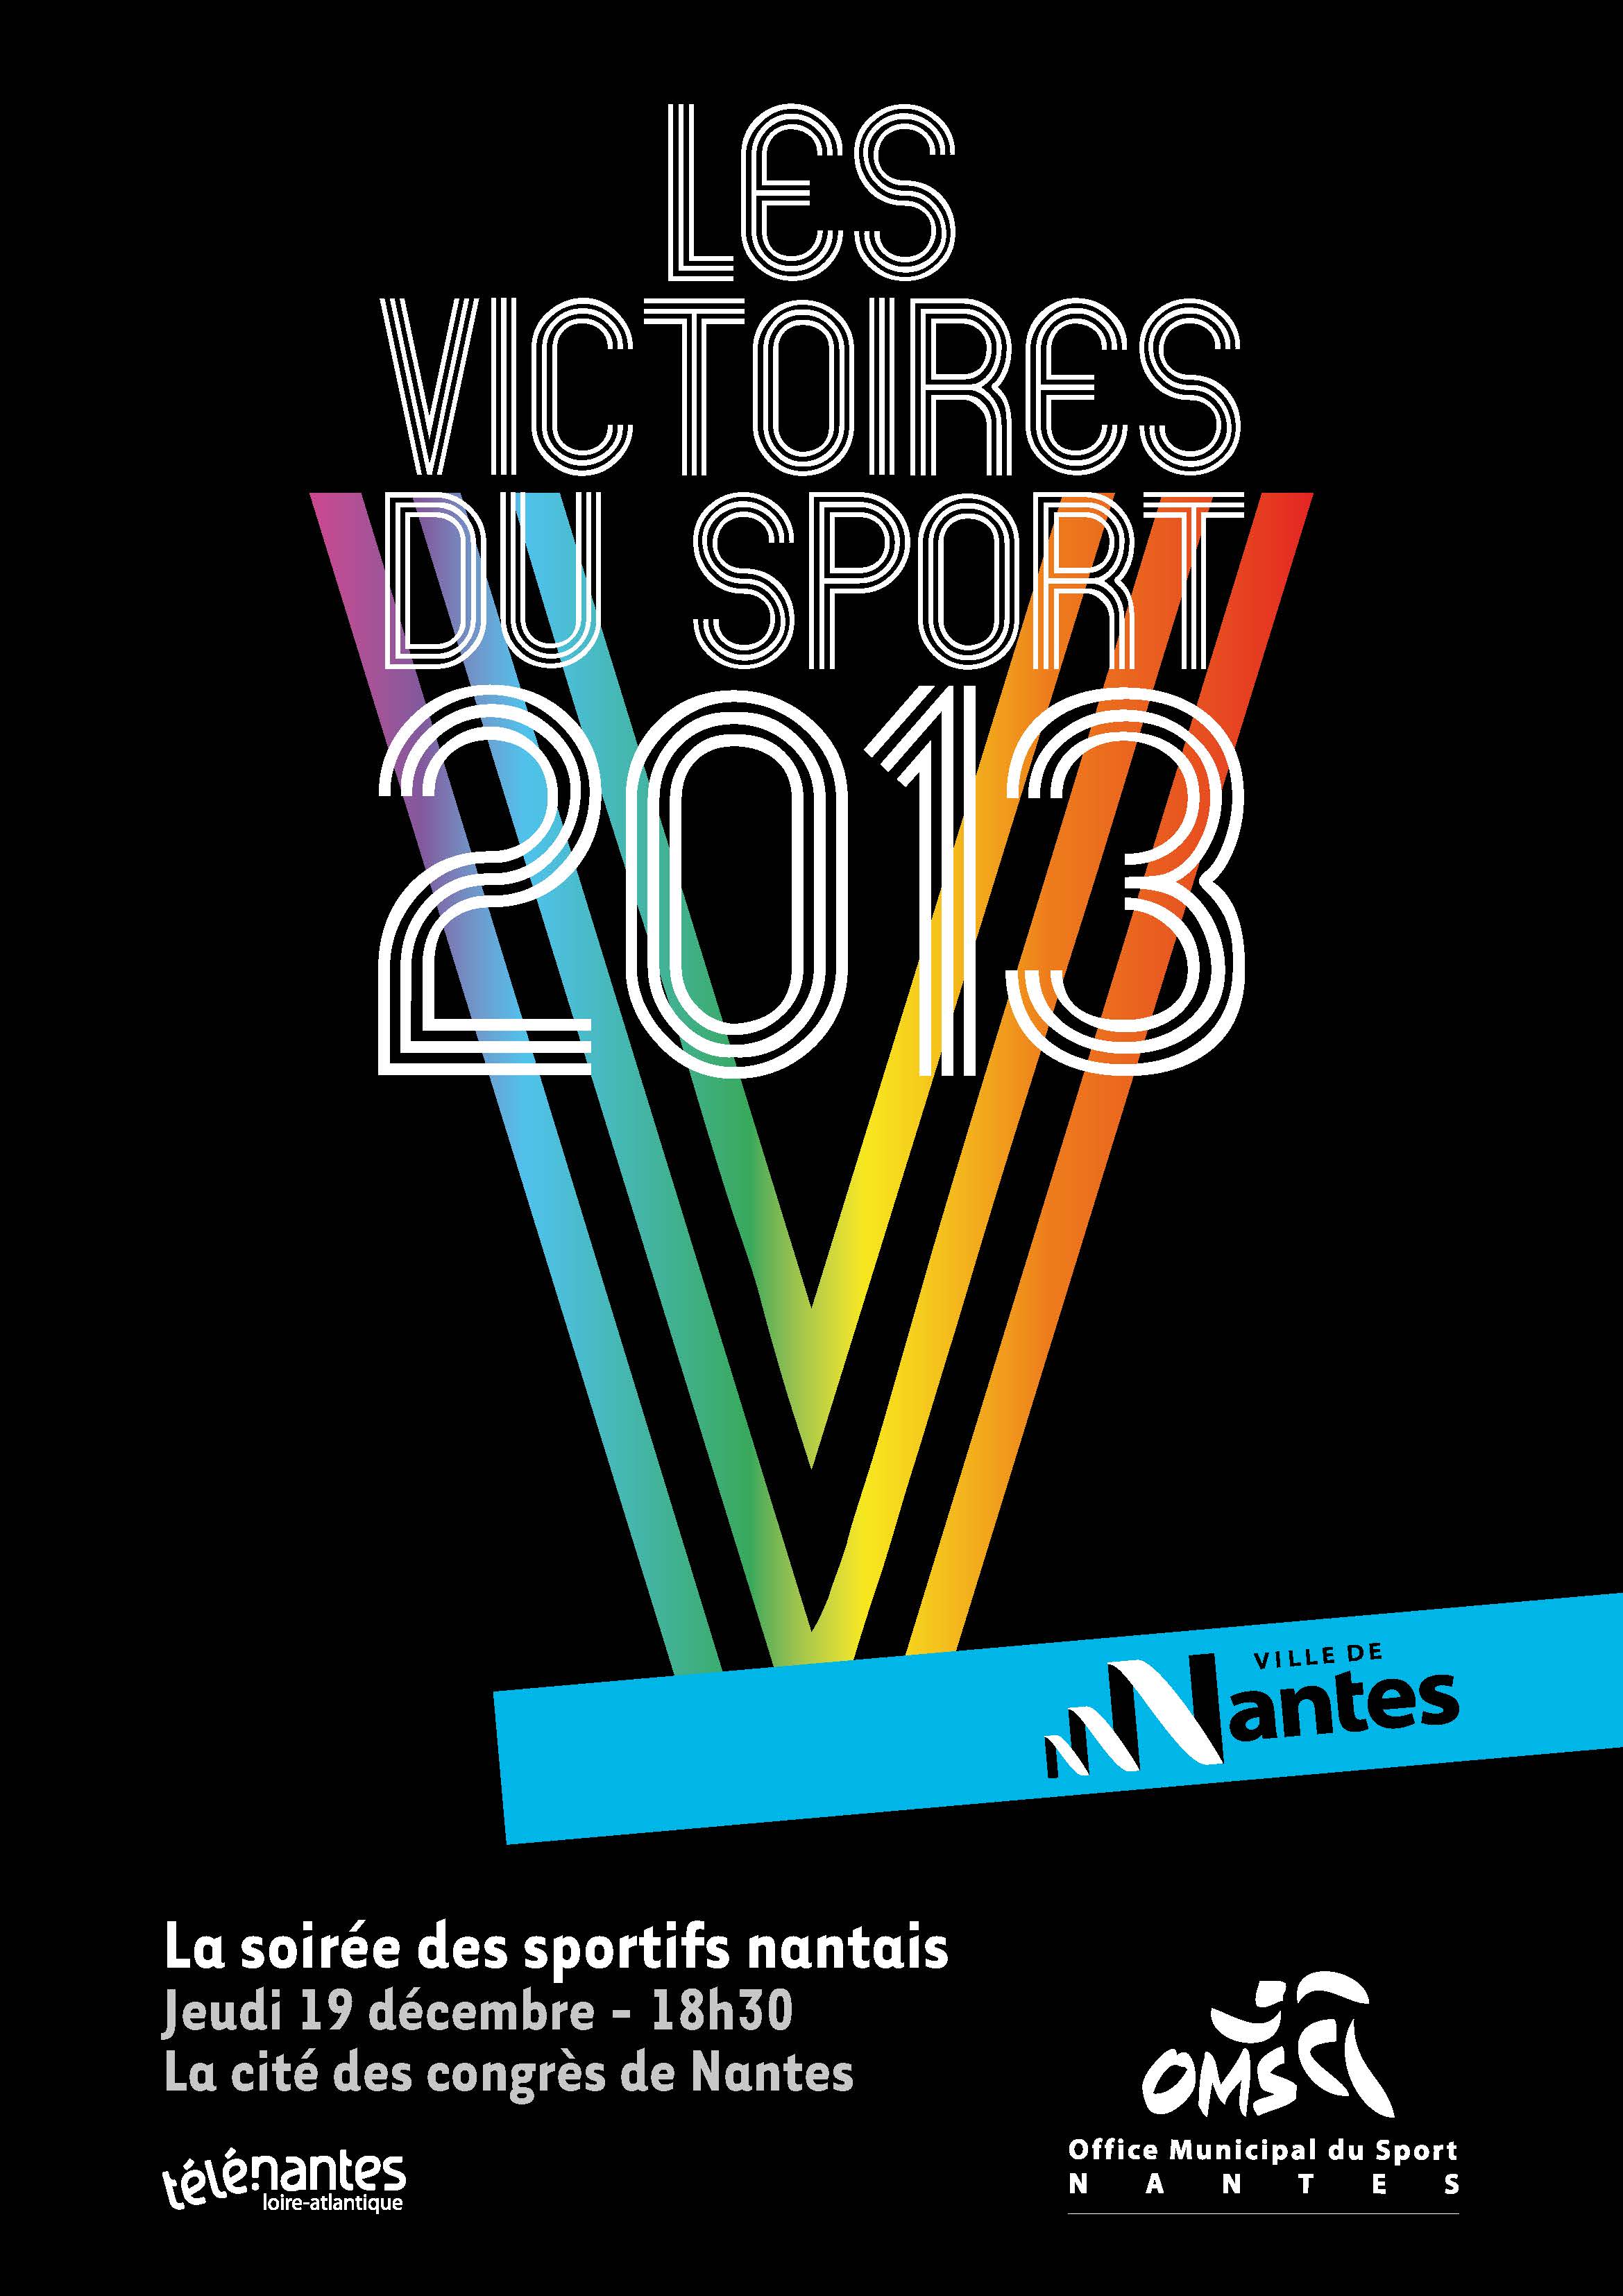 2013.09.16-Affiche-Victoires-2013